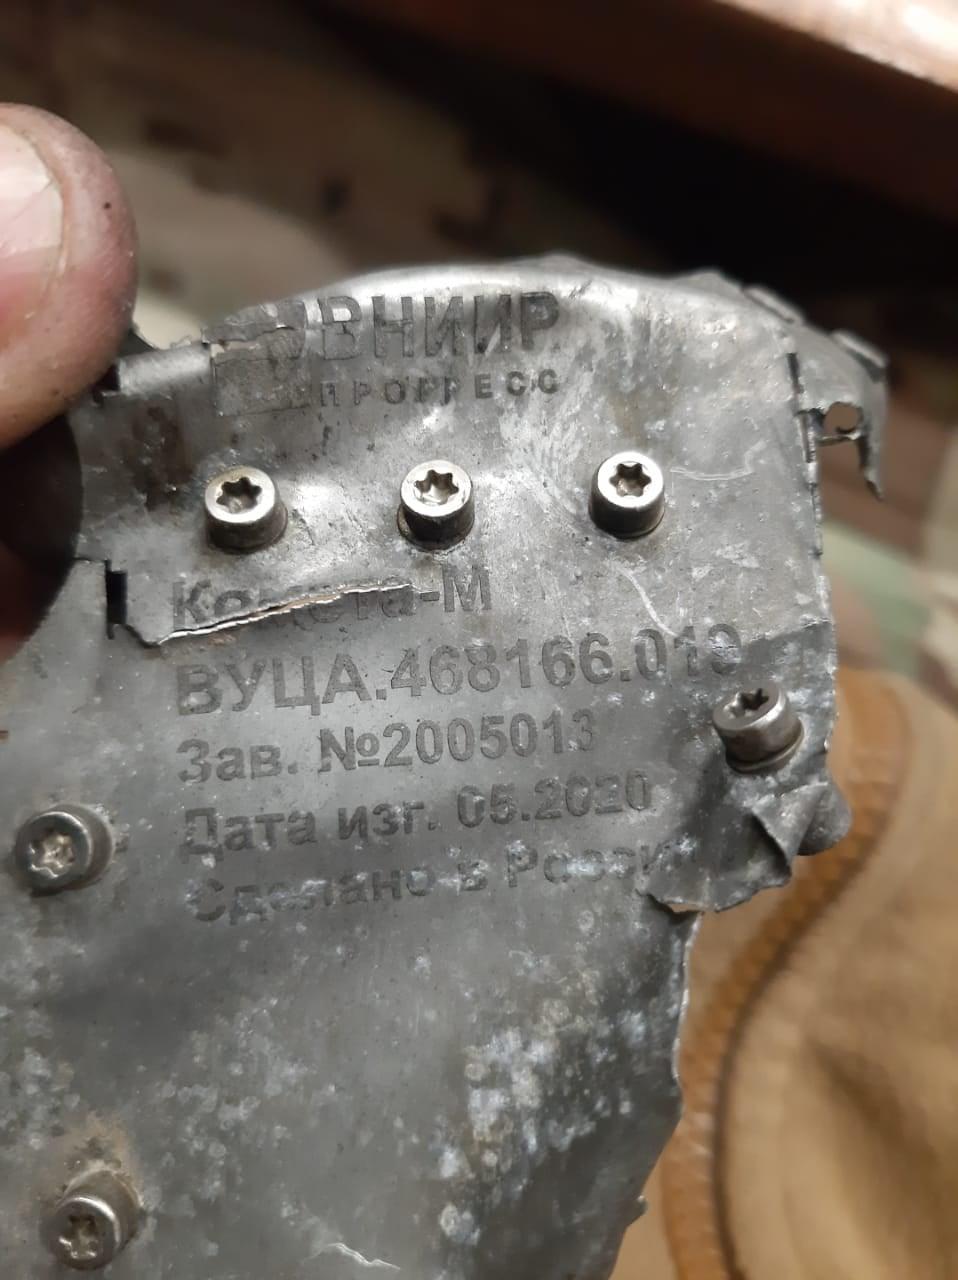 изготовленная в РФ деталь беспилотника сбитого на Донбассе